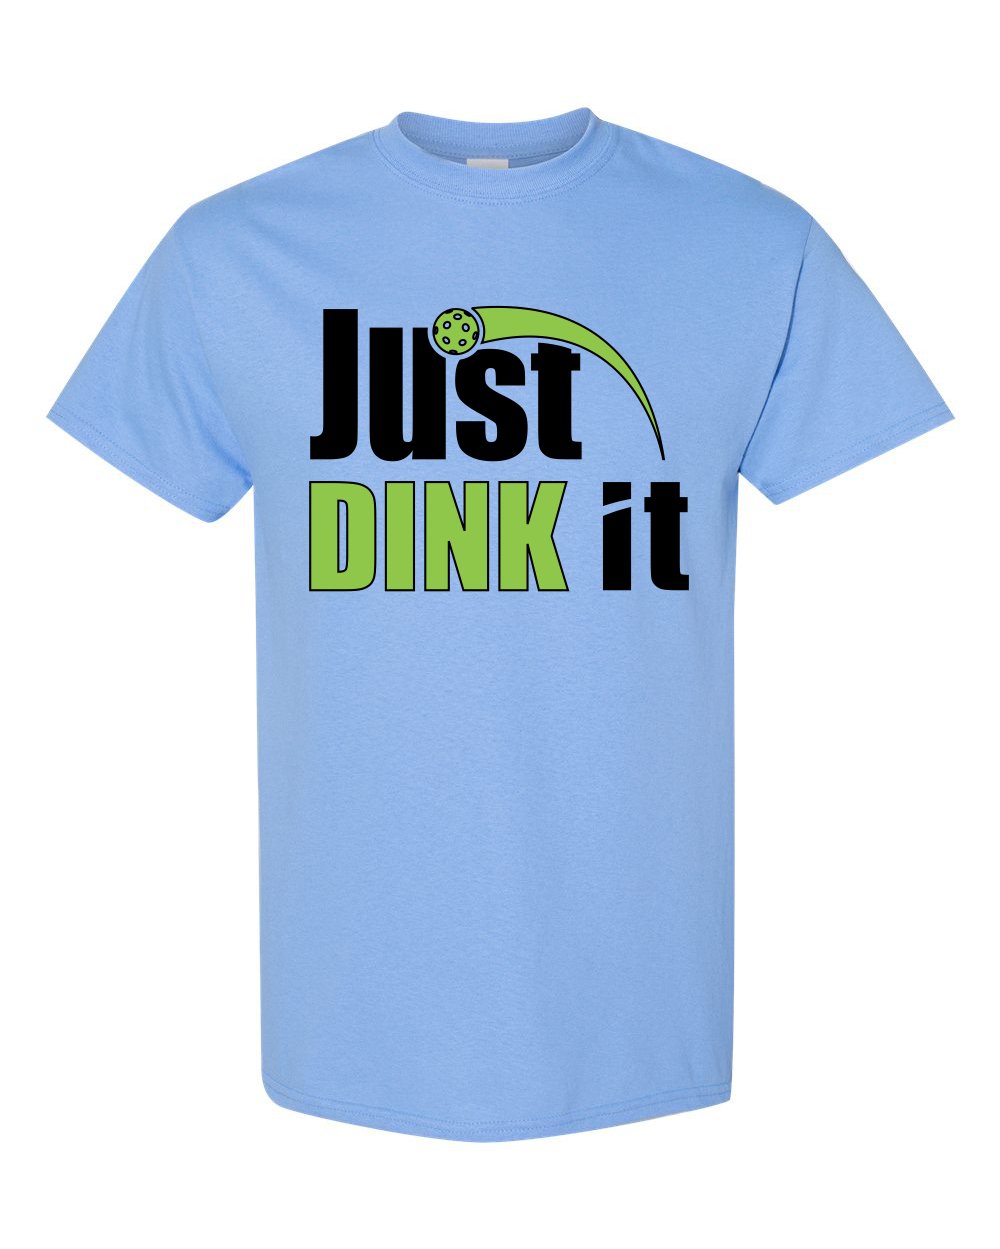 Pickleball Shirt, Just Dink it t-shirt, pickleballer - SBS T Shop